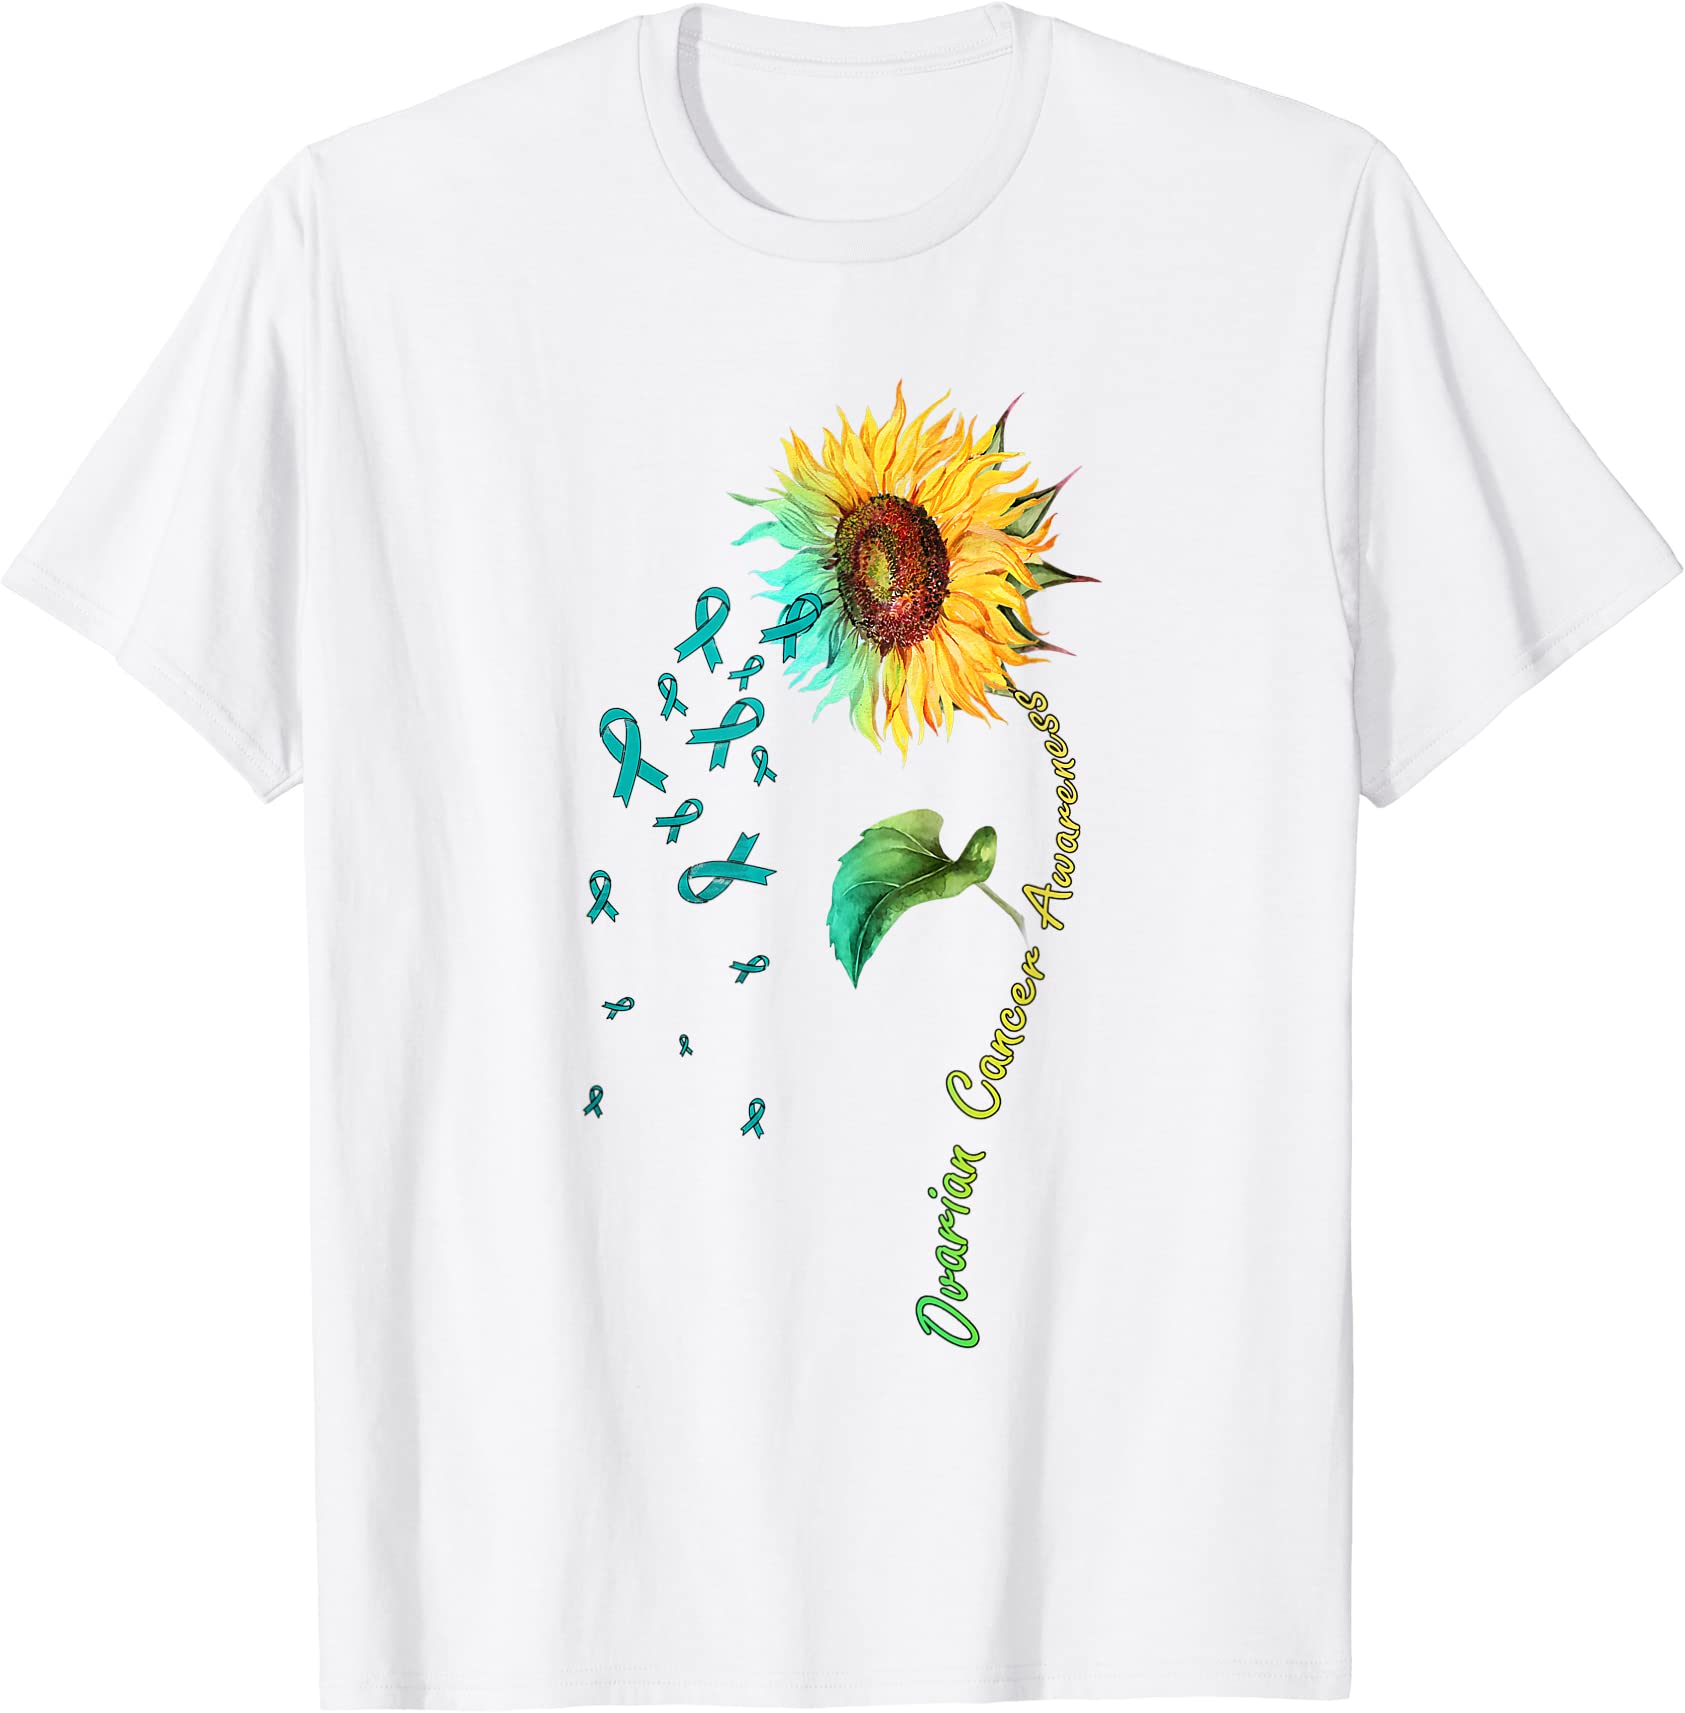 ovarian cancer awareness sunflower tshirt men - Buy t-shirt designs